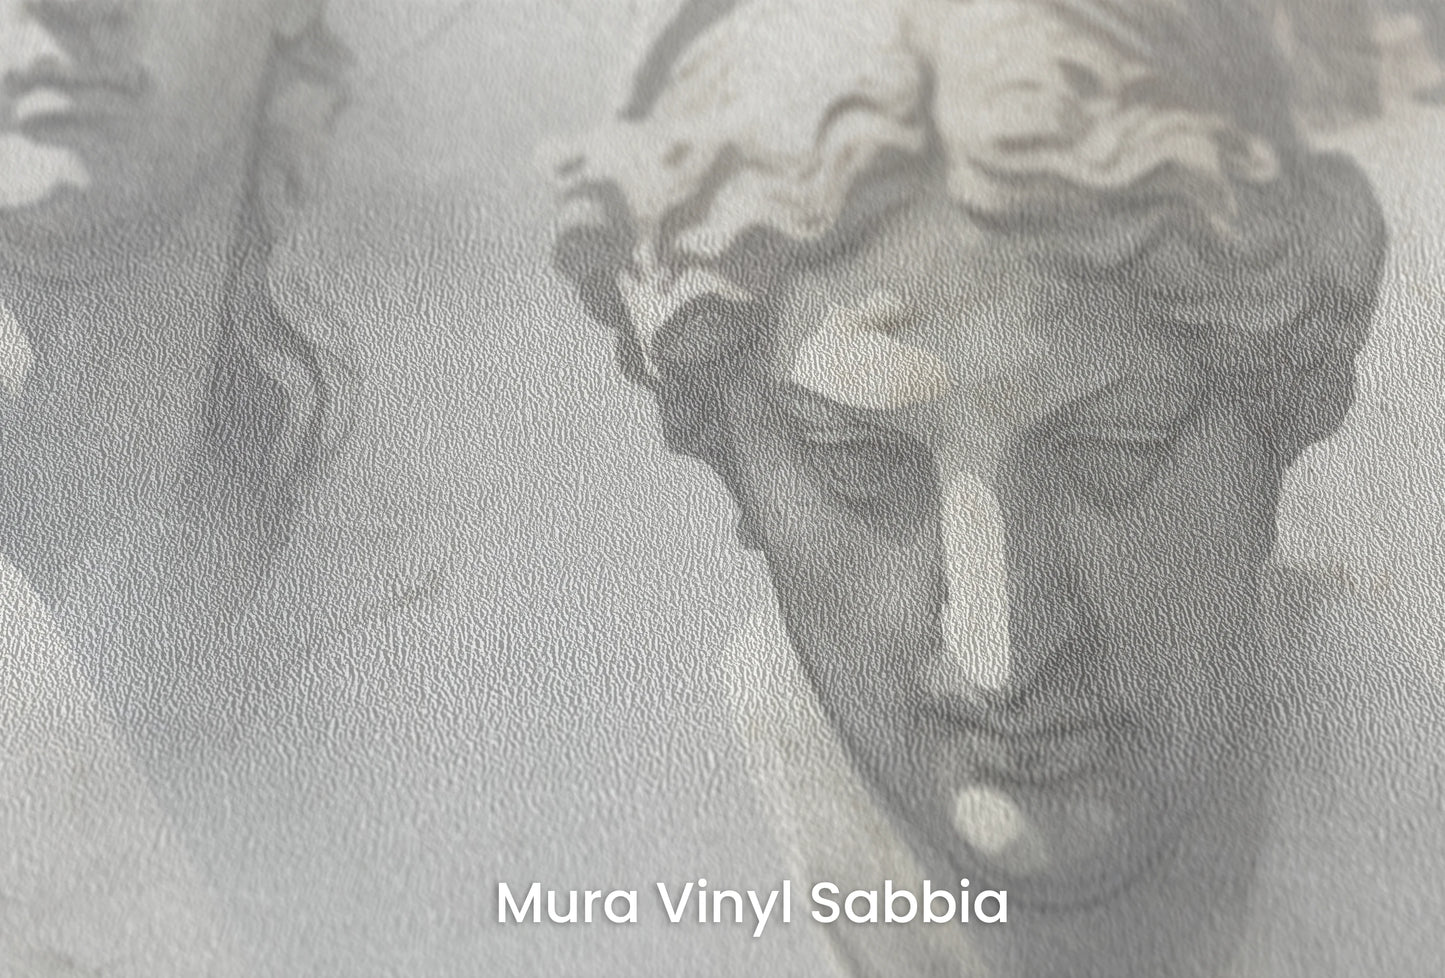 Zbliżenie na artystyczną fototapetę o nazwie The Muses' Grace na podłożu Mura Vinyl Sabbia struktura grubego ziarna piasku.